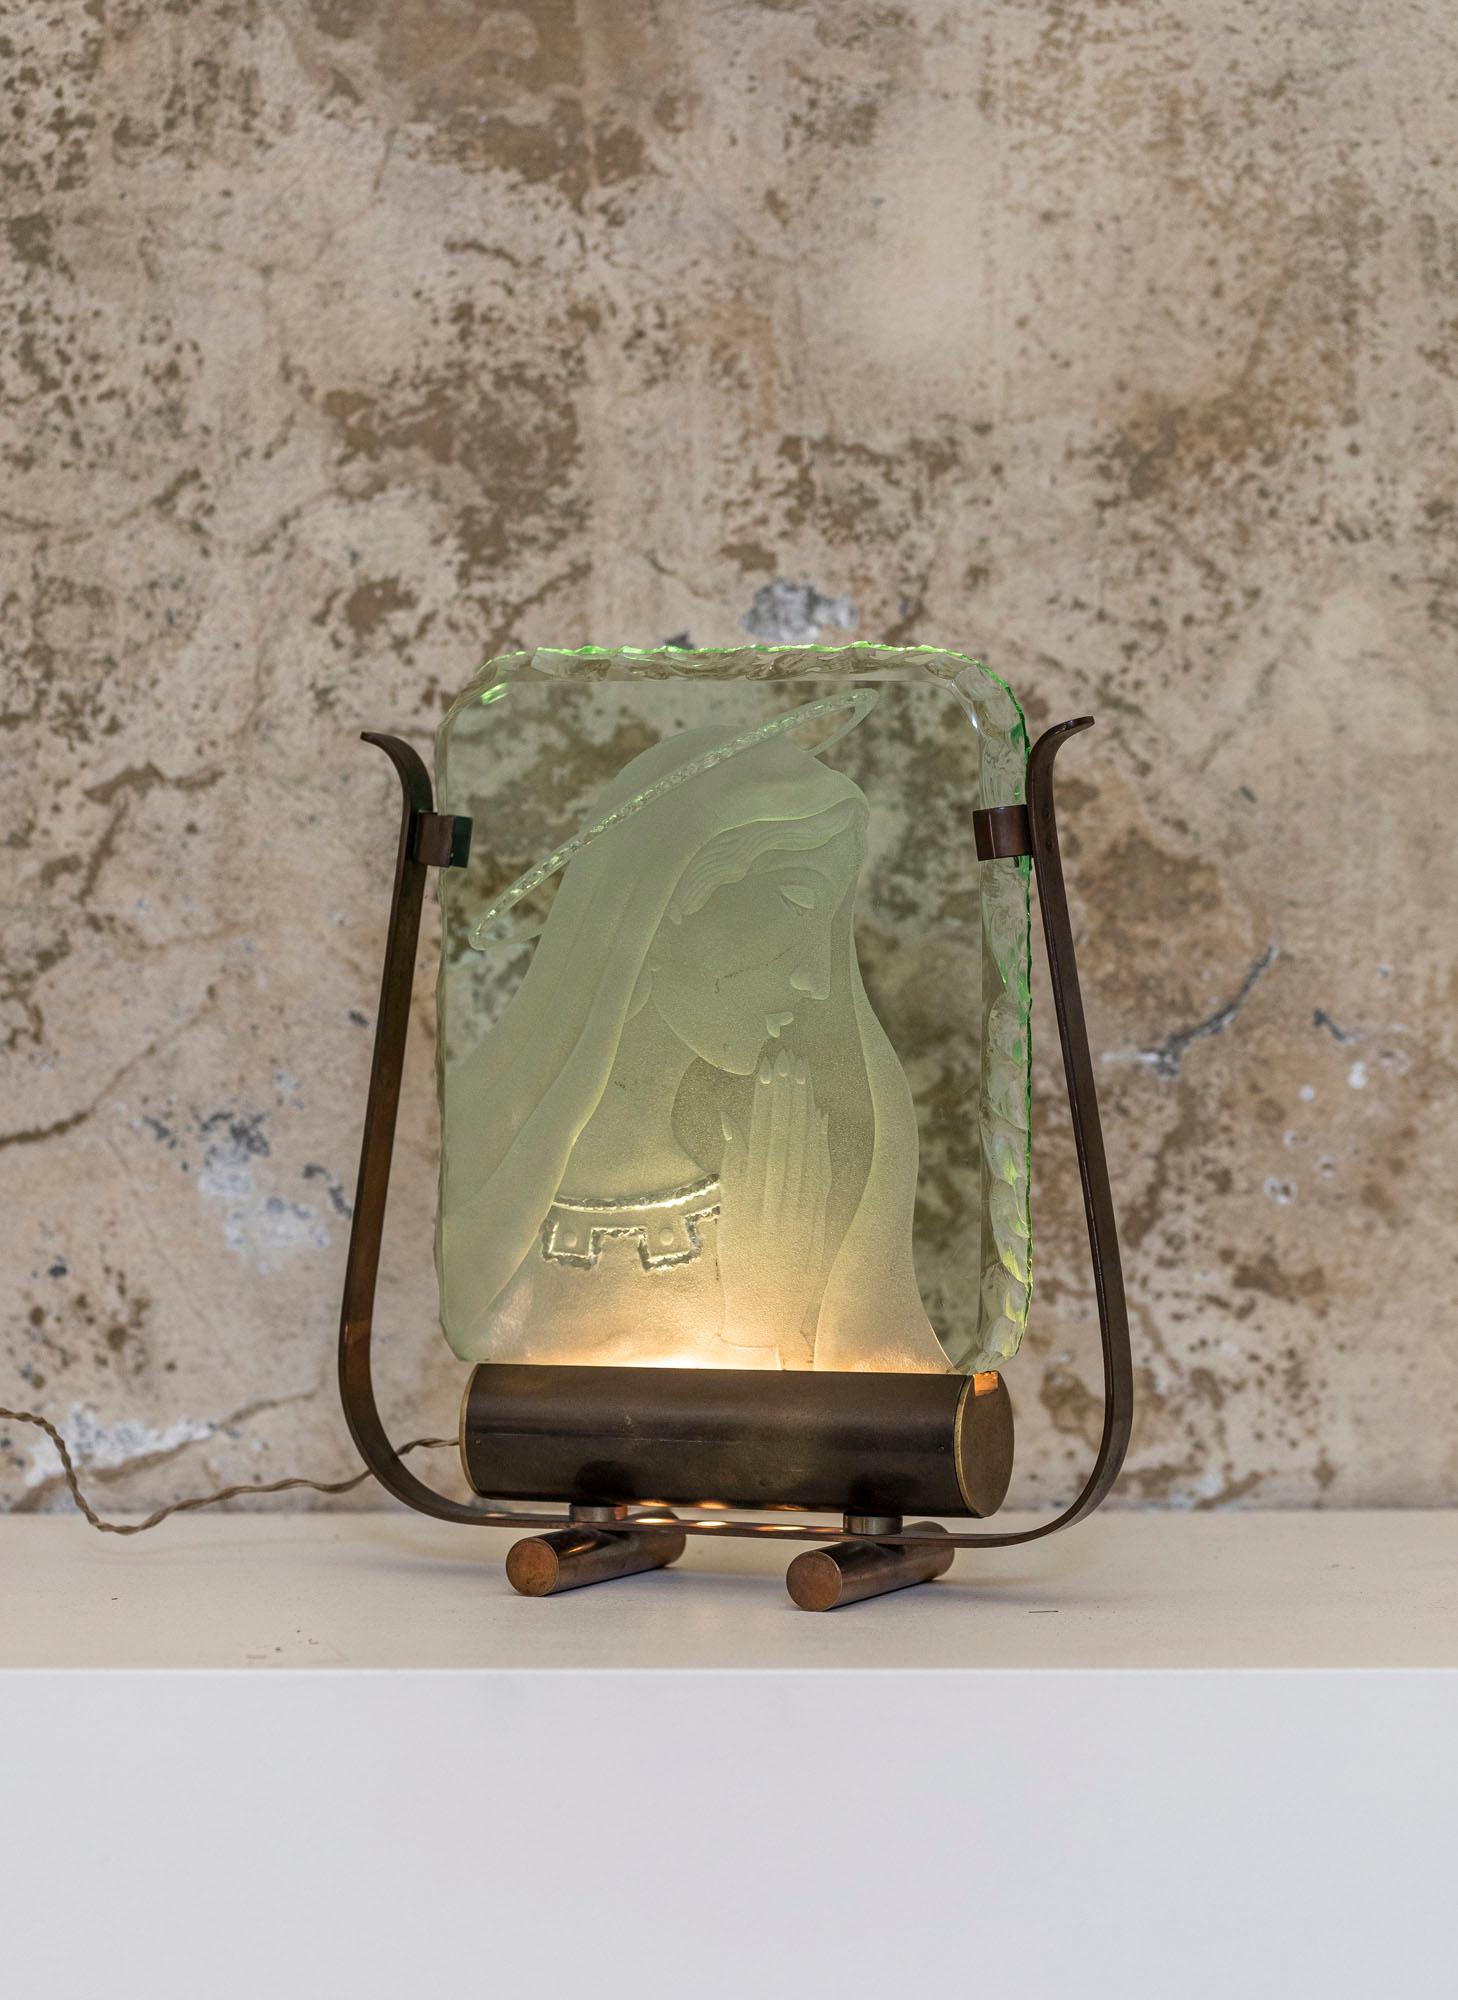 Lampe de table avec figure féminine religieuse réalisée par Pietro Chiesa pour Fontana Arte, Italie 1940 ca. 
Maria, la figure du milieu, est en verre patiné, l'objet est en verre de cristal vert quadrillé avec une sculpture géométrique, le design